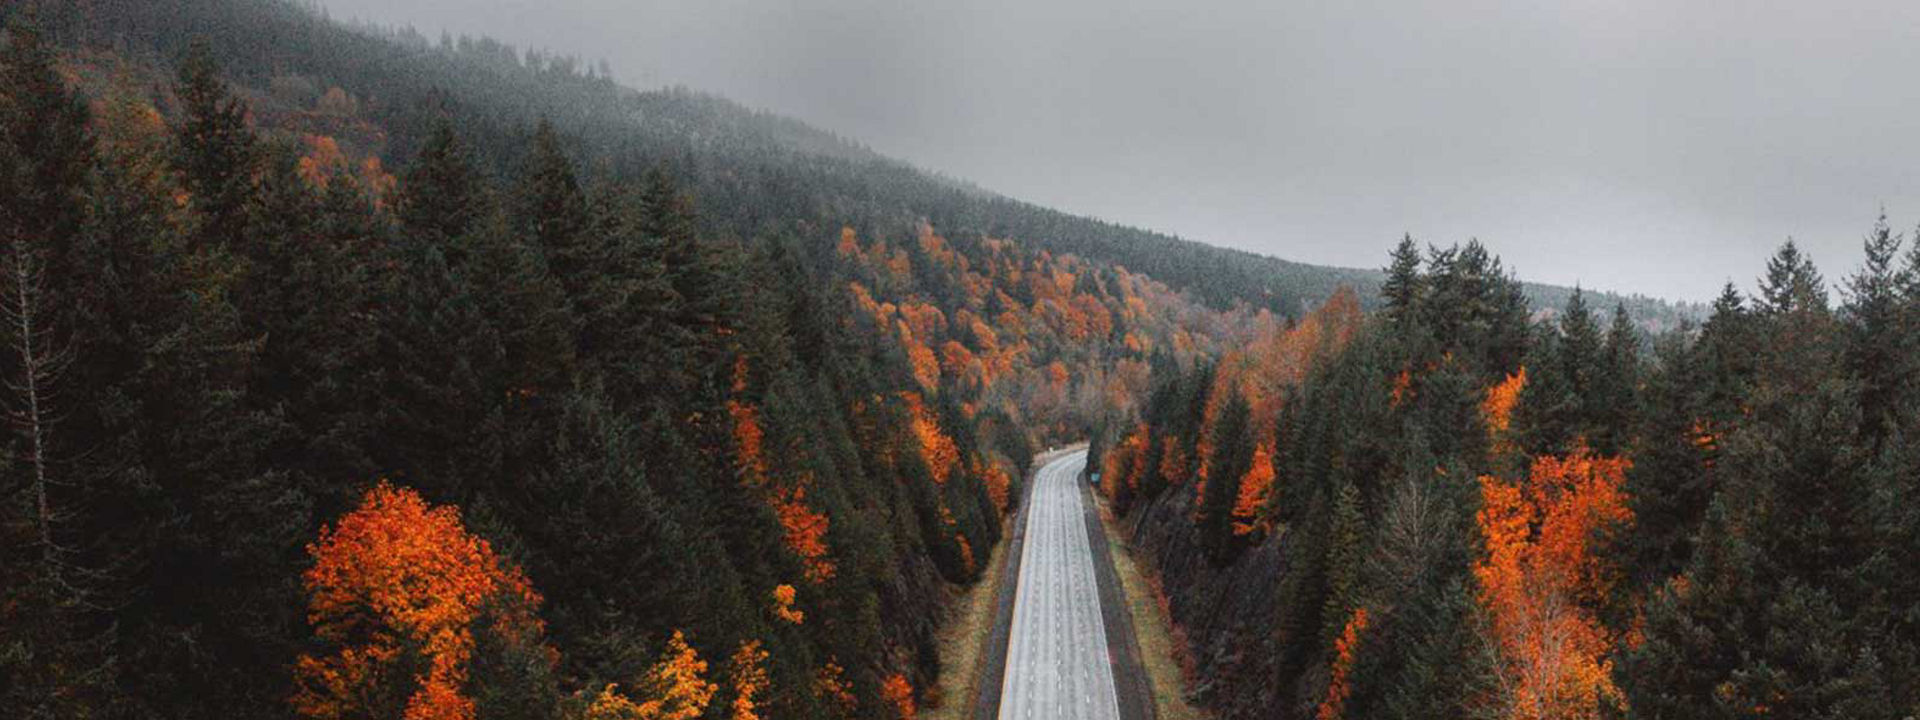 Questa immagine rappresenta un’autostrada vuota che attraversa un bosco in autunno per mostrare che Weather Control è una soluzione adatta a tutte le stagioni